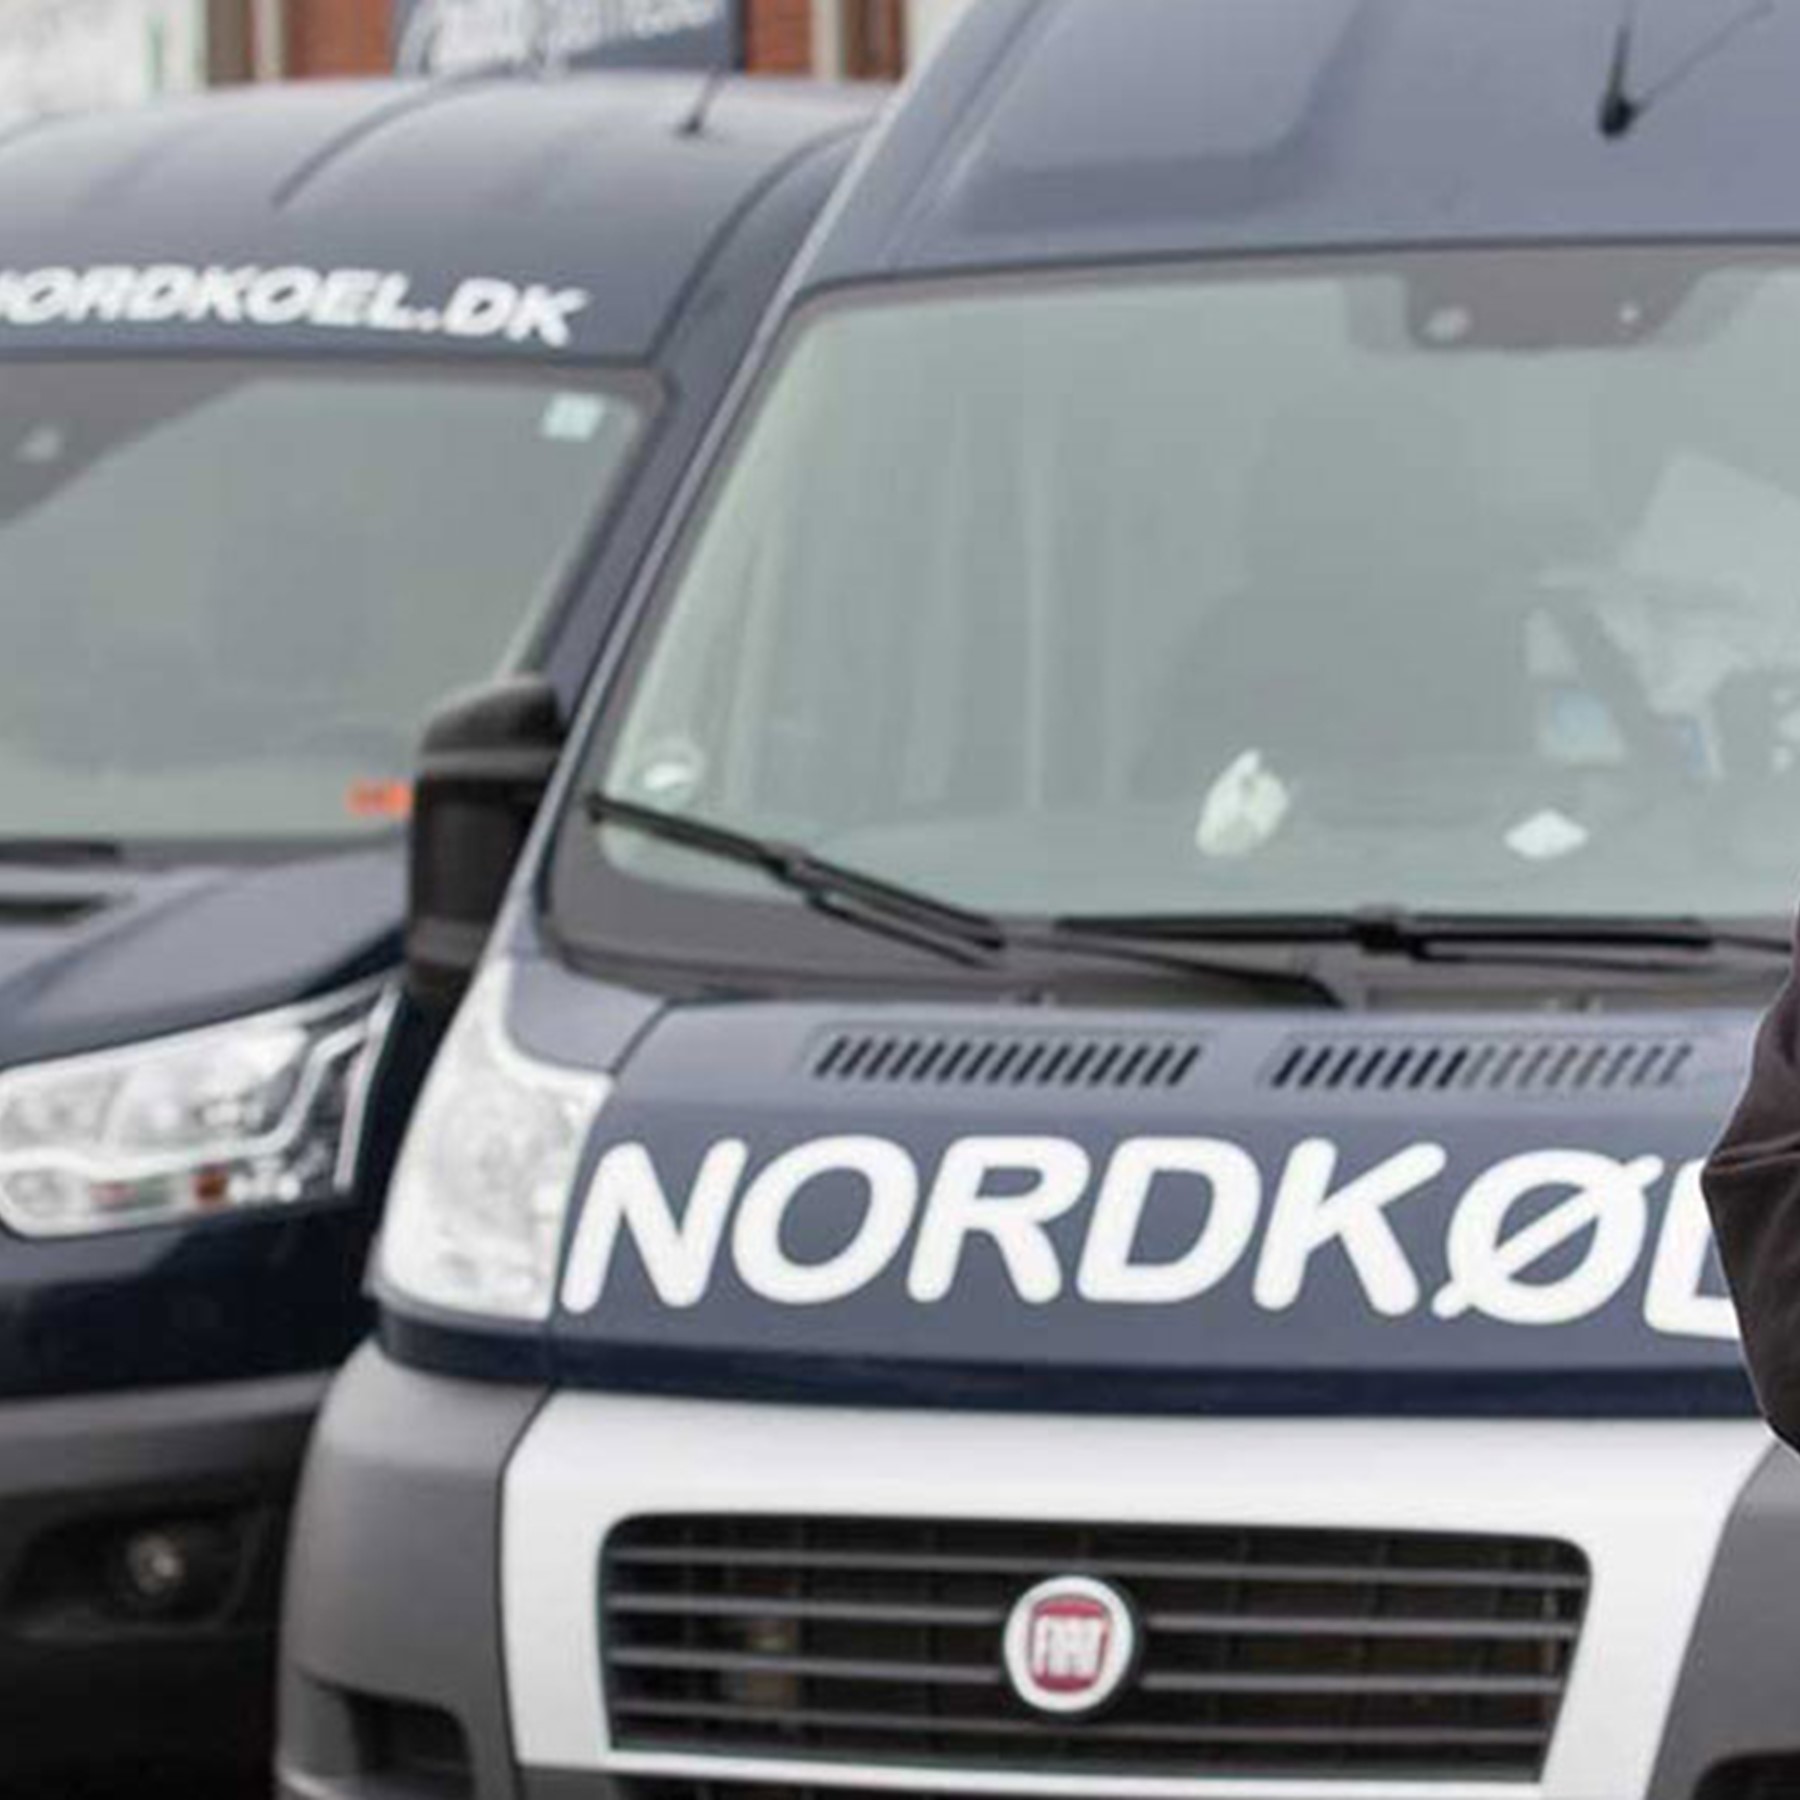 Contact Nordkøl ApS